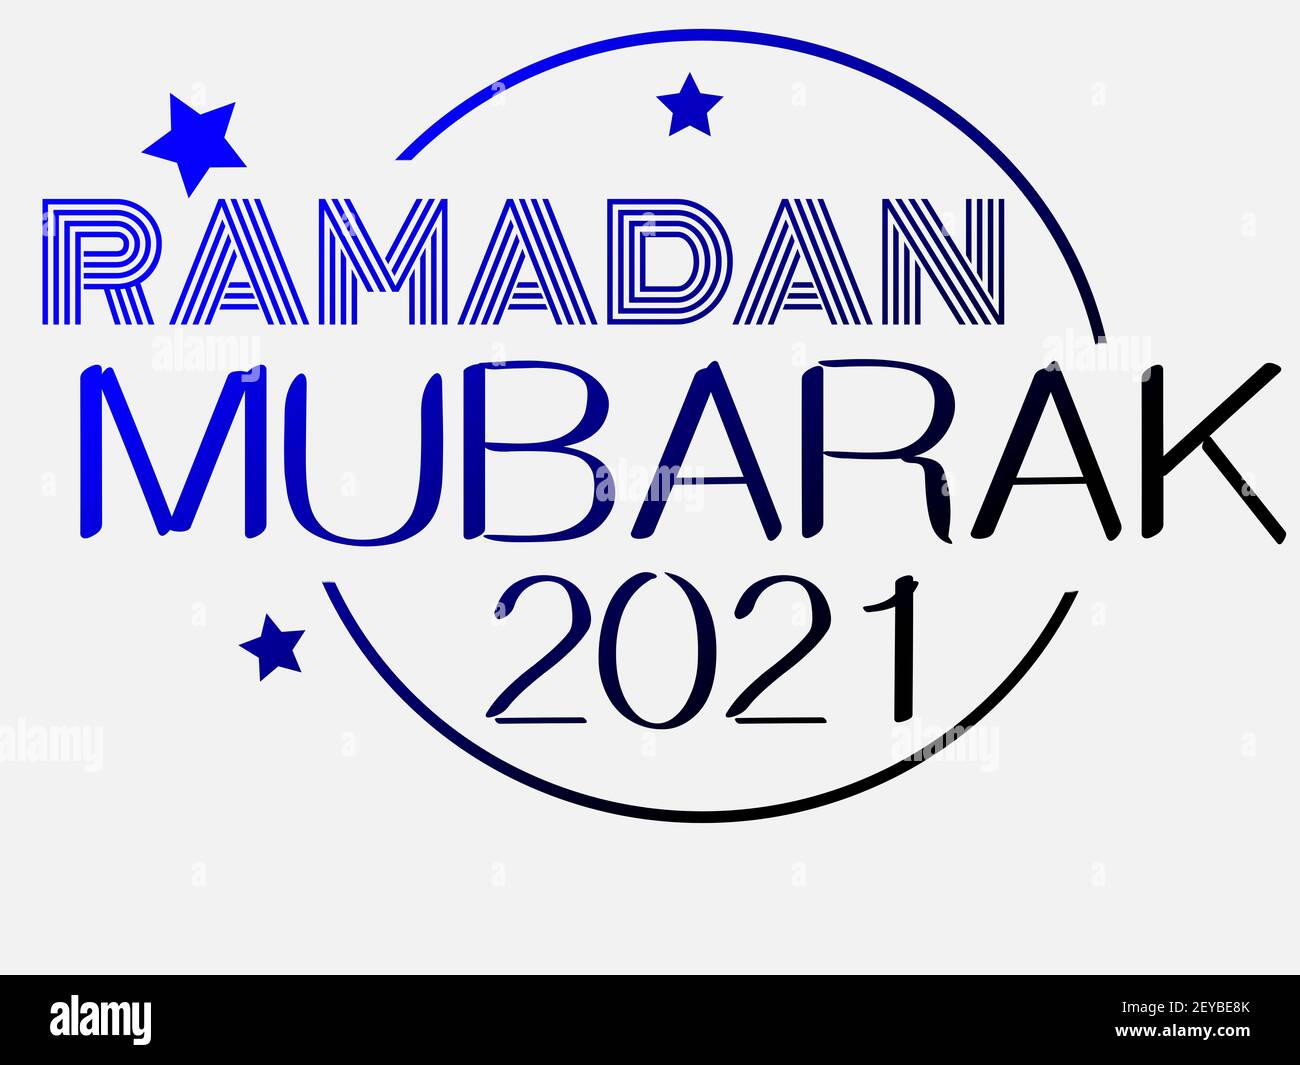 Illustrazione colorata di Ramadan Mubarak 2021. Elegante design con logo con stelle. Design basato su testi o testi in colori vivaci su sfondo bianco. Foto Stock